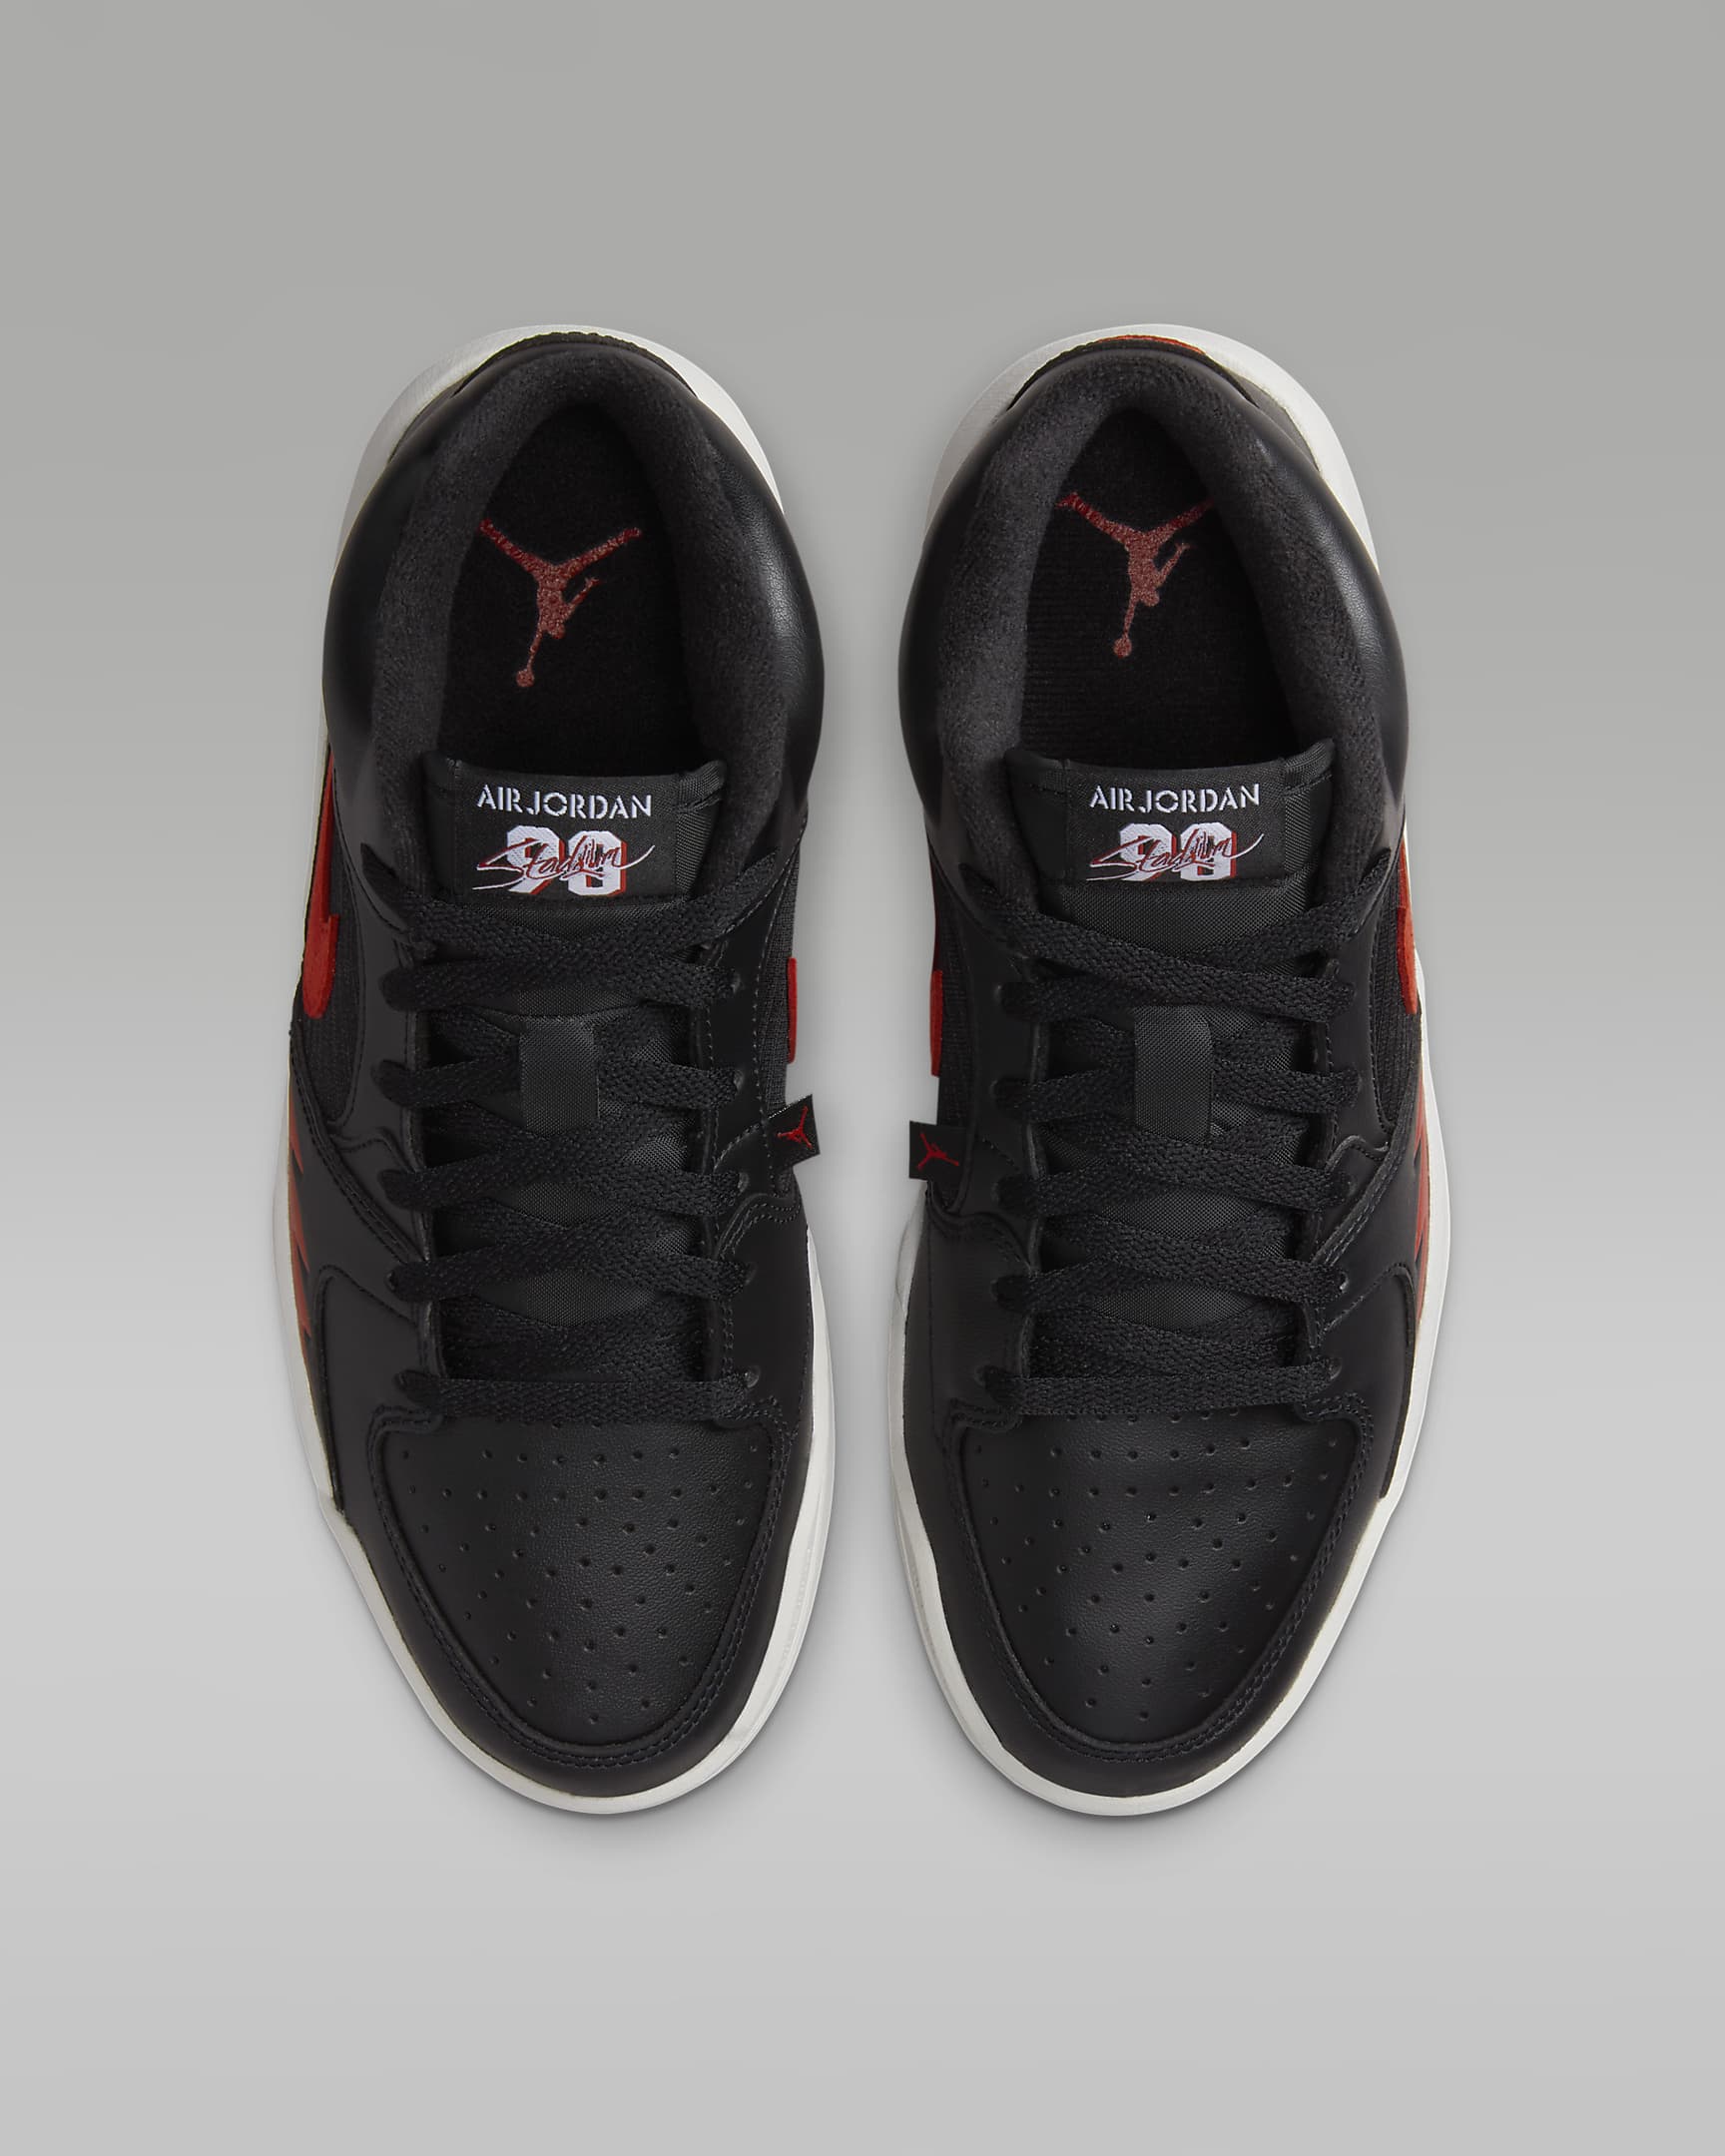 Jordan Stadium 90 Women's Shoes - Black/White/Sail/Gym Red